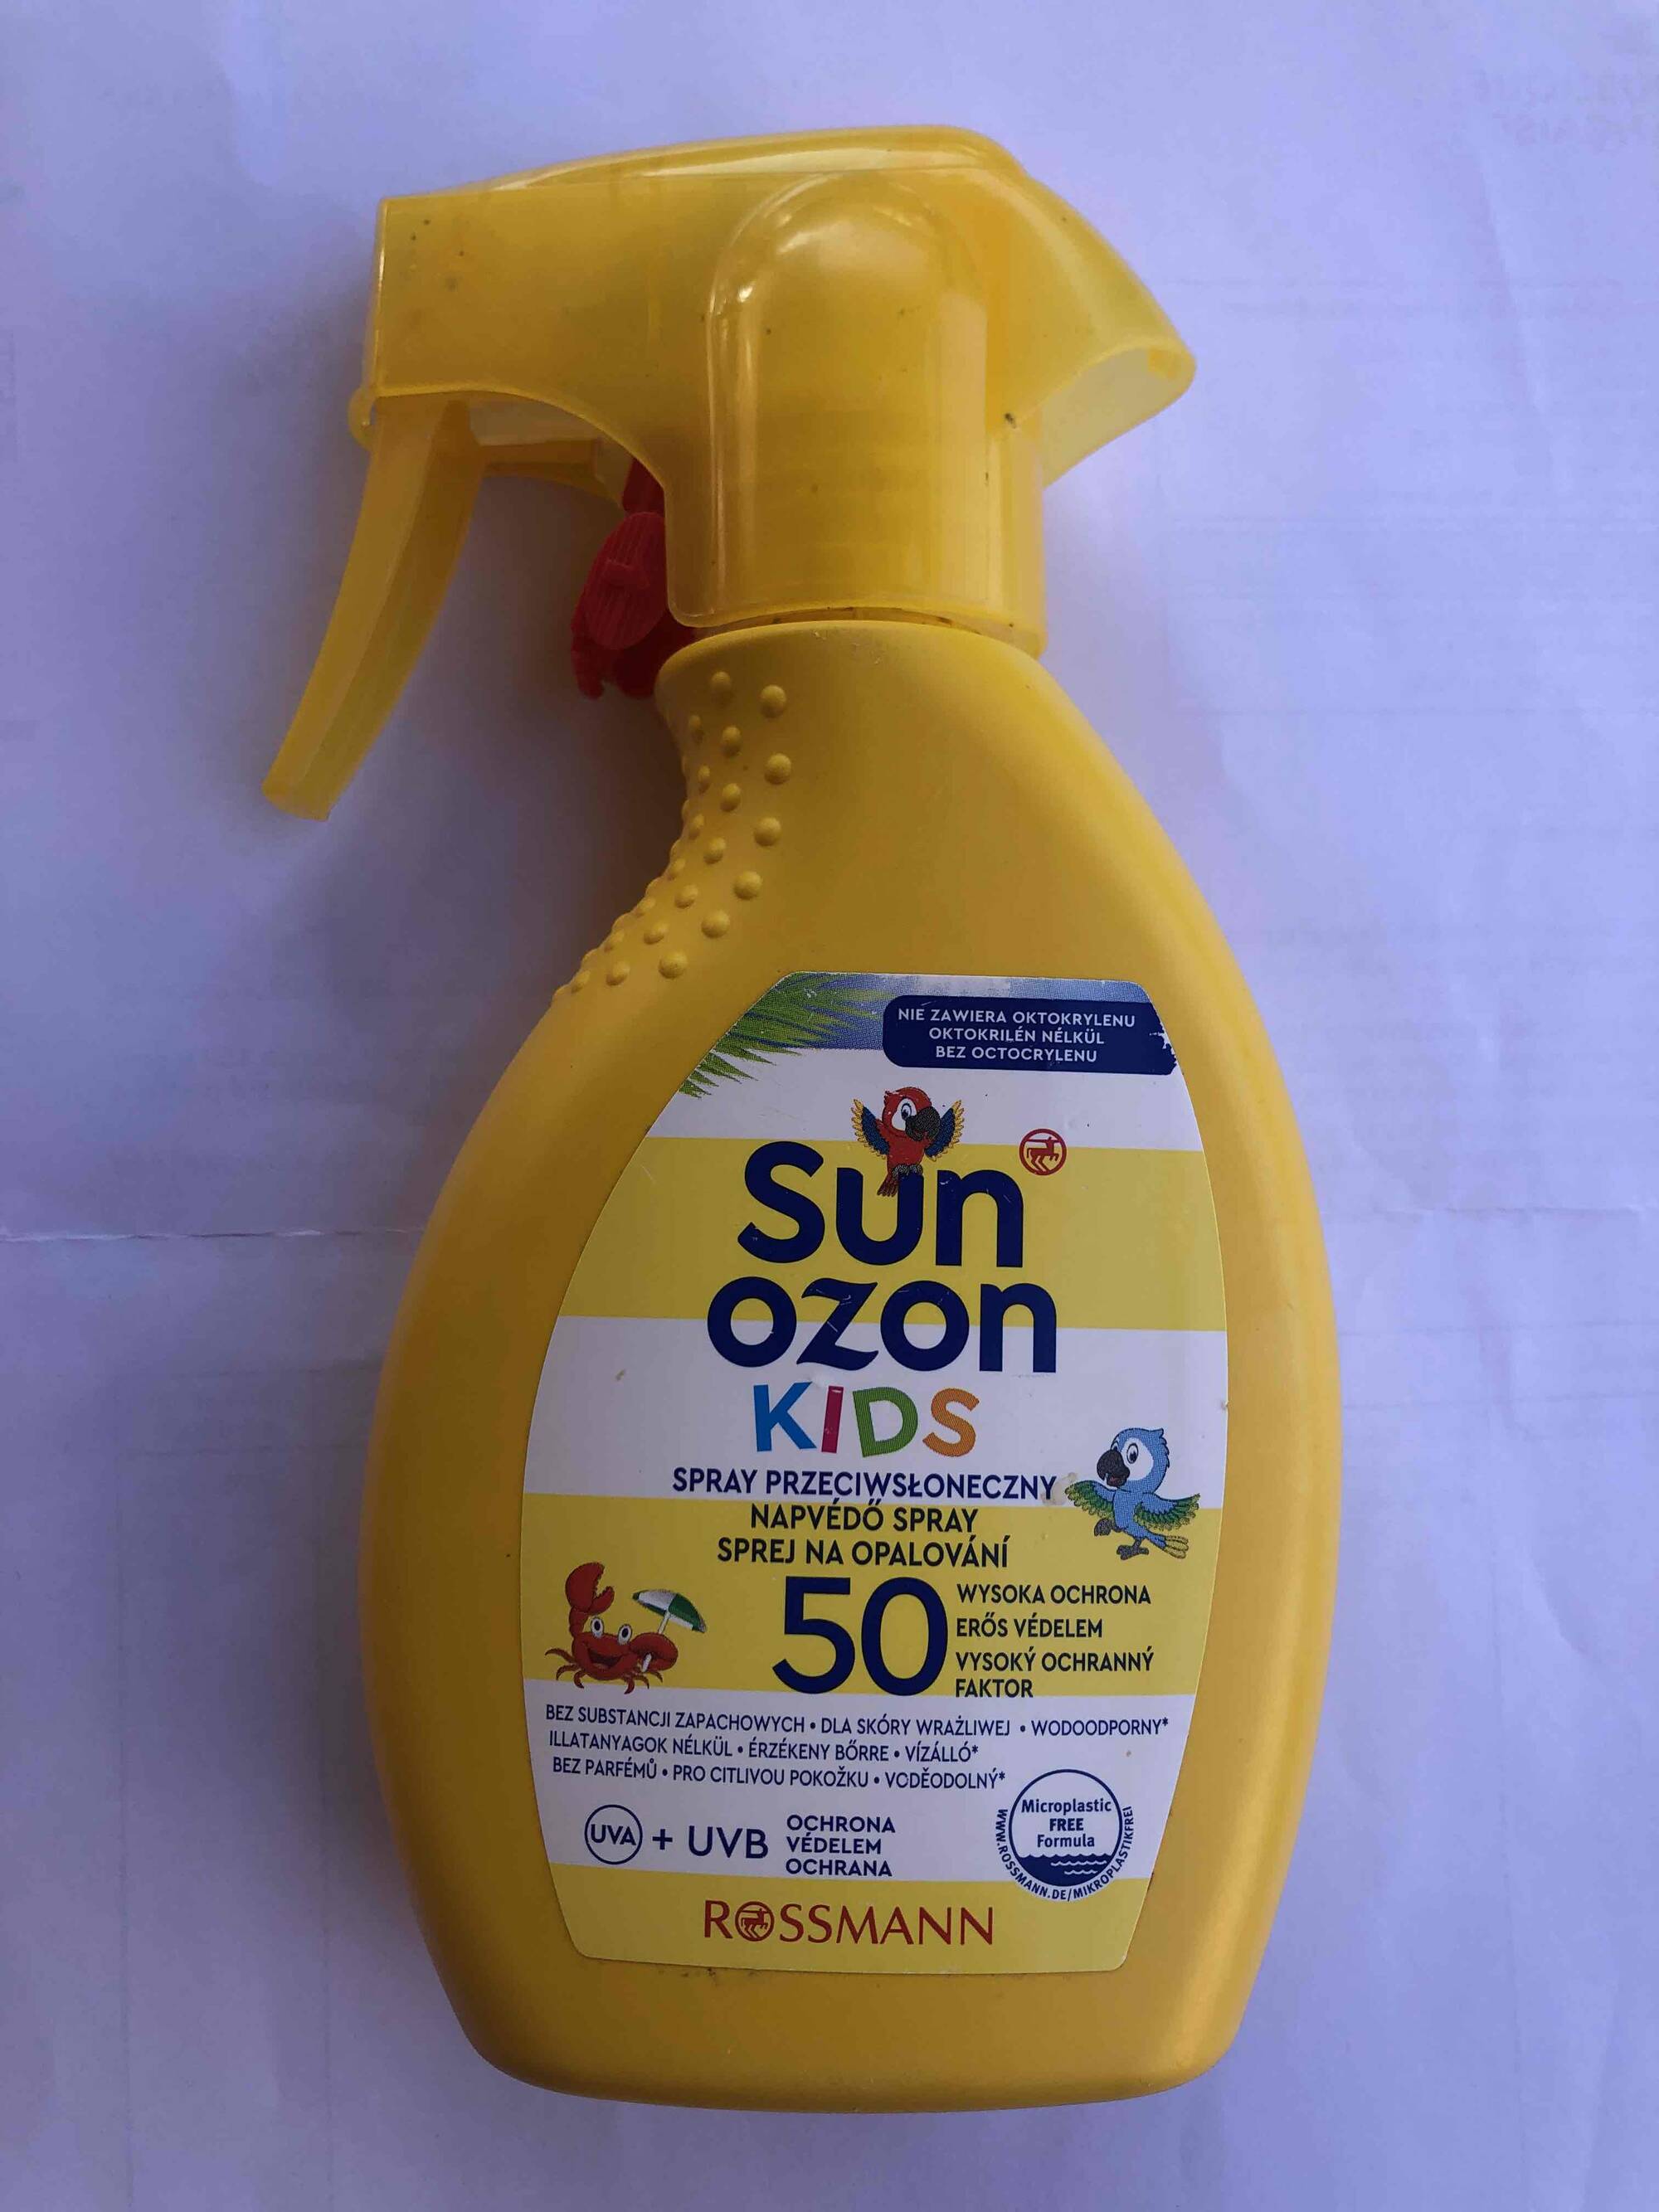 ROSSMANN - Sun ozon - Spray przeciwsłoneczny kids spf 50.